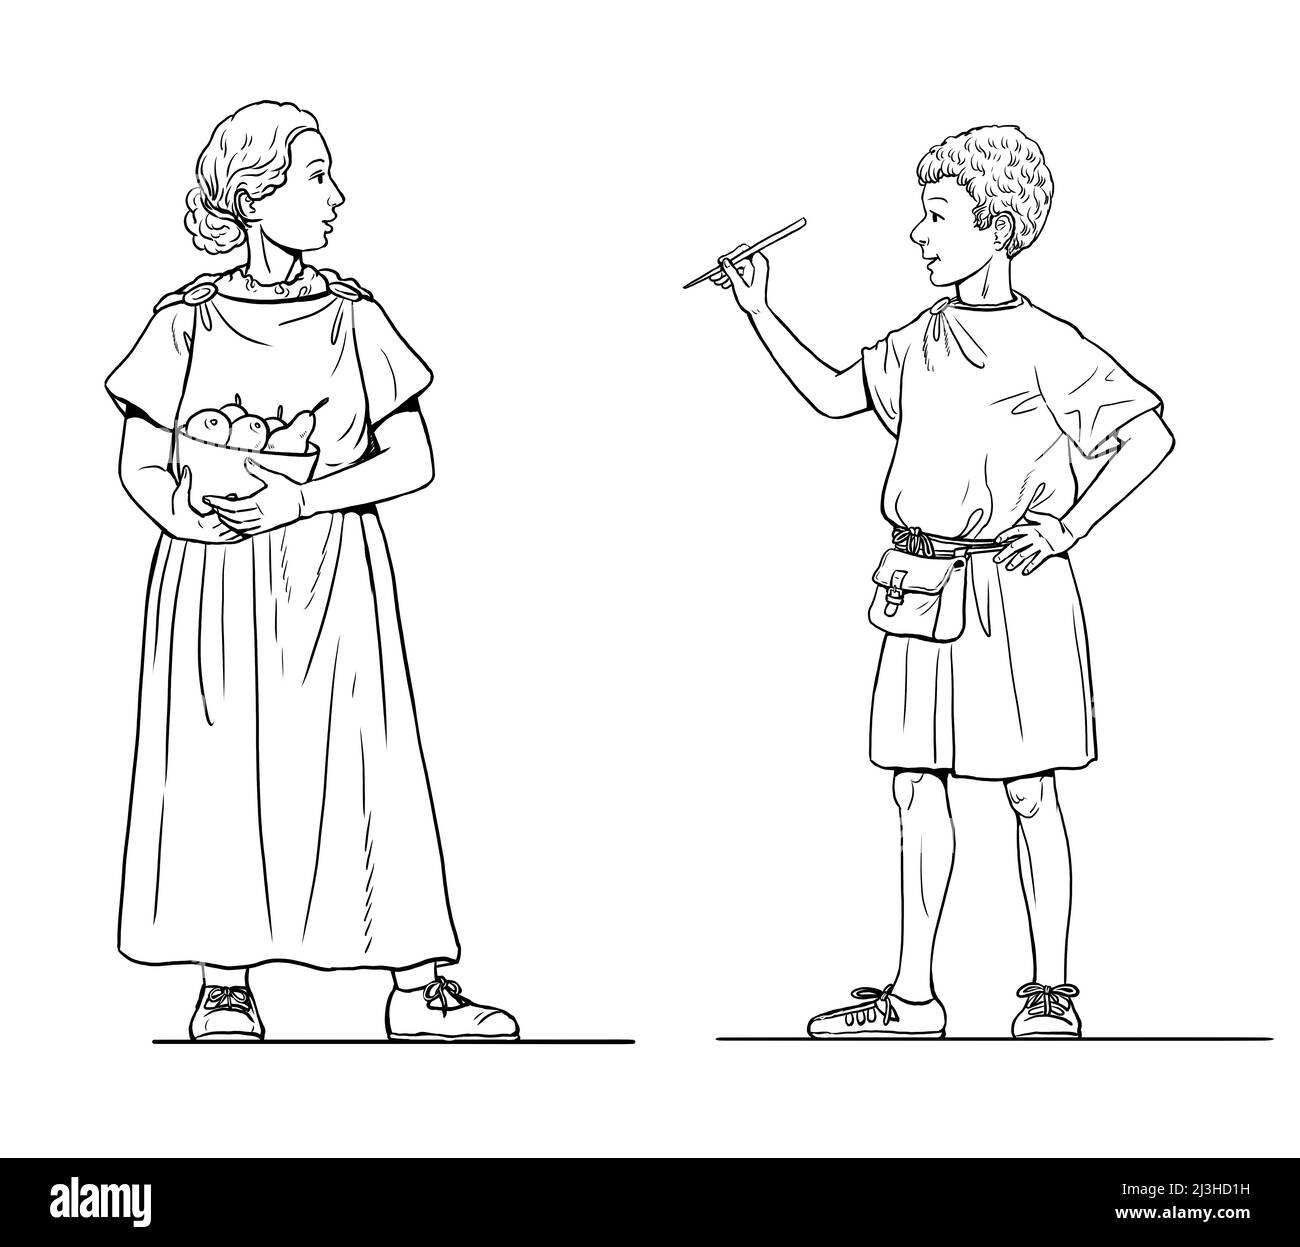 Illustration für römische Kinder. Kinder im antiken Rom. Stockfoto